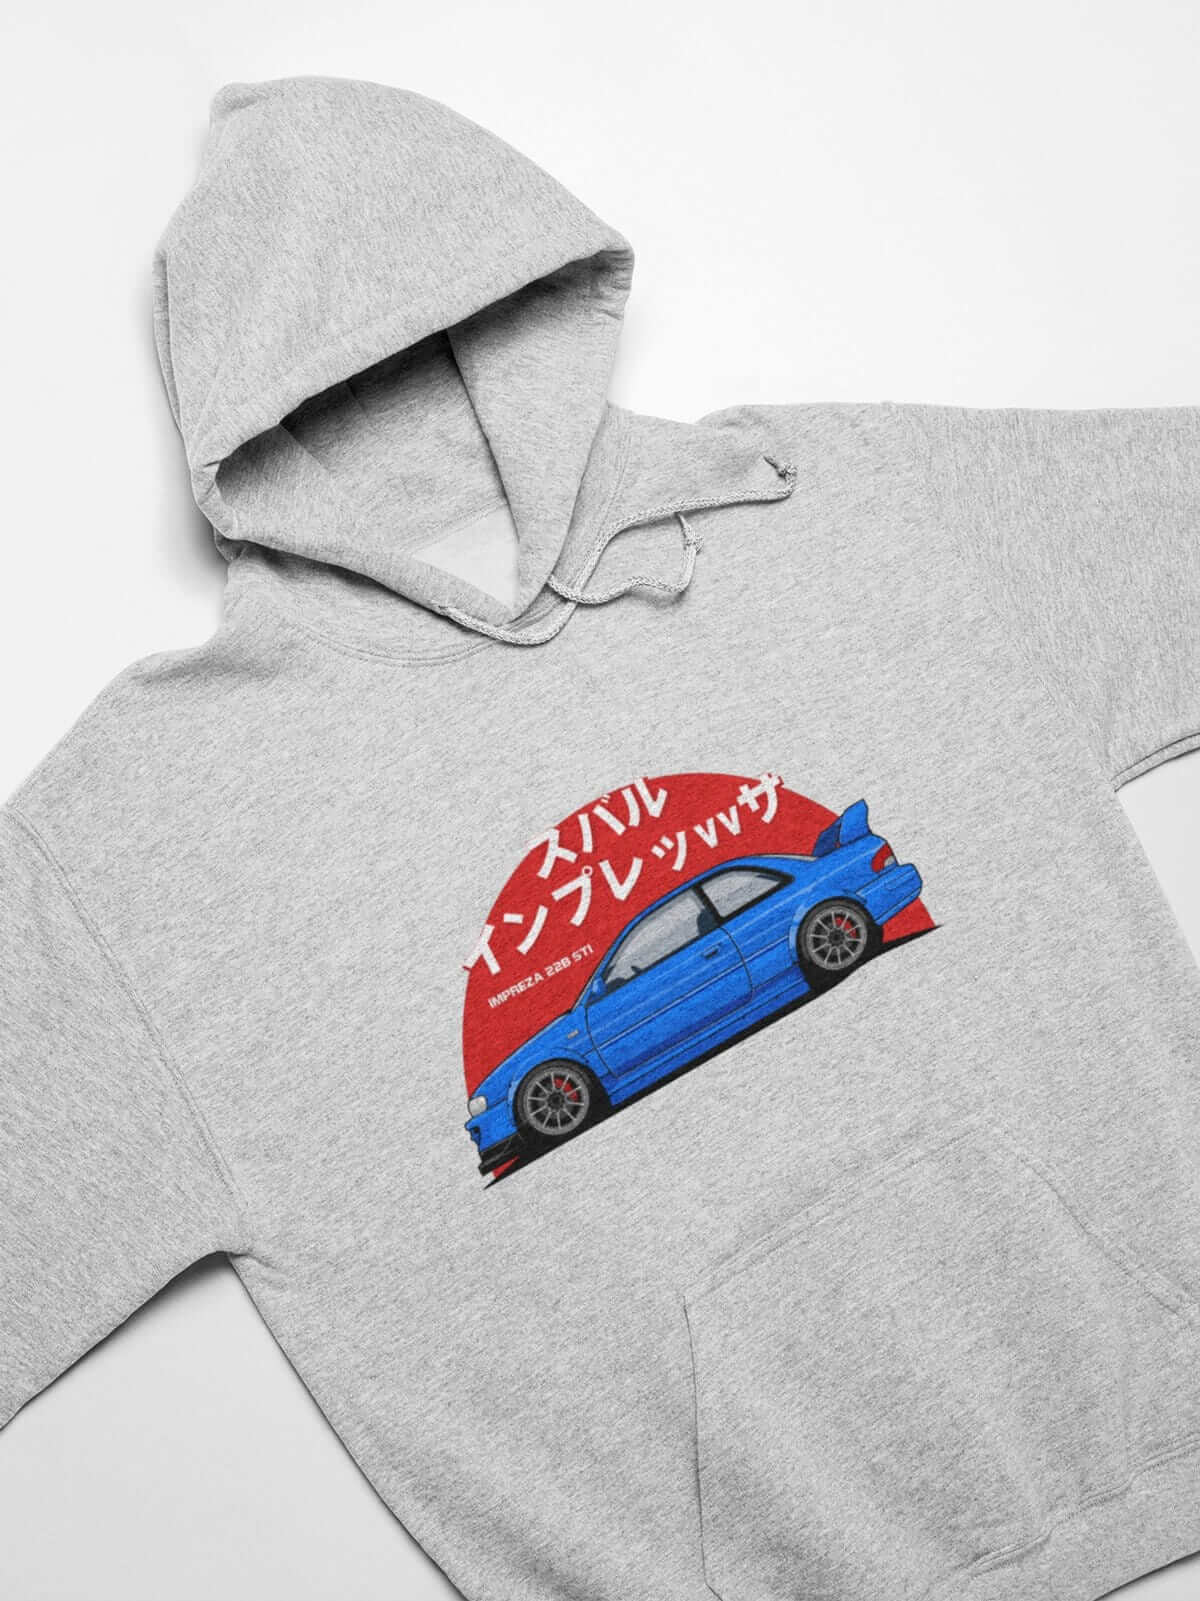 Japanese sports car printed on athletic heather car hoodie, JDM hooded sweatshirt, car guy gift, car lover, car fan, car enthusiast, petrolhead, JDM lover, boyfriend gift idea